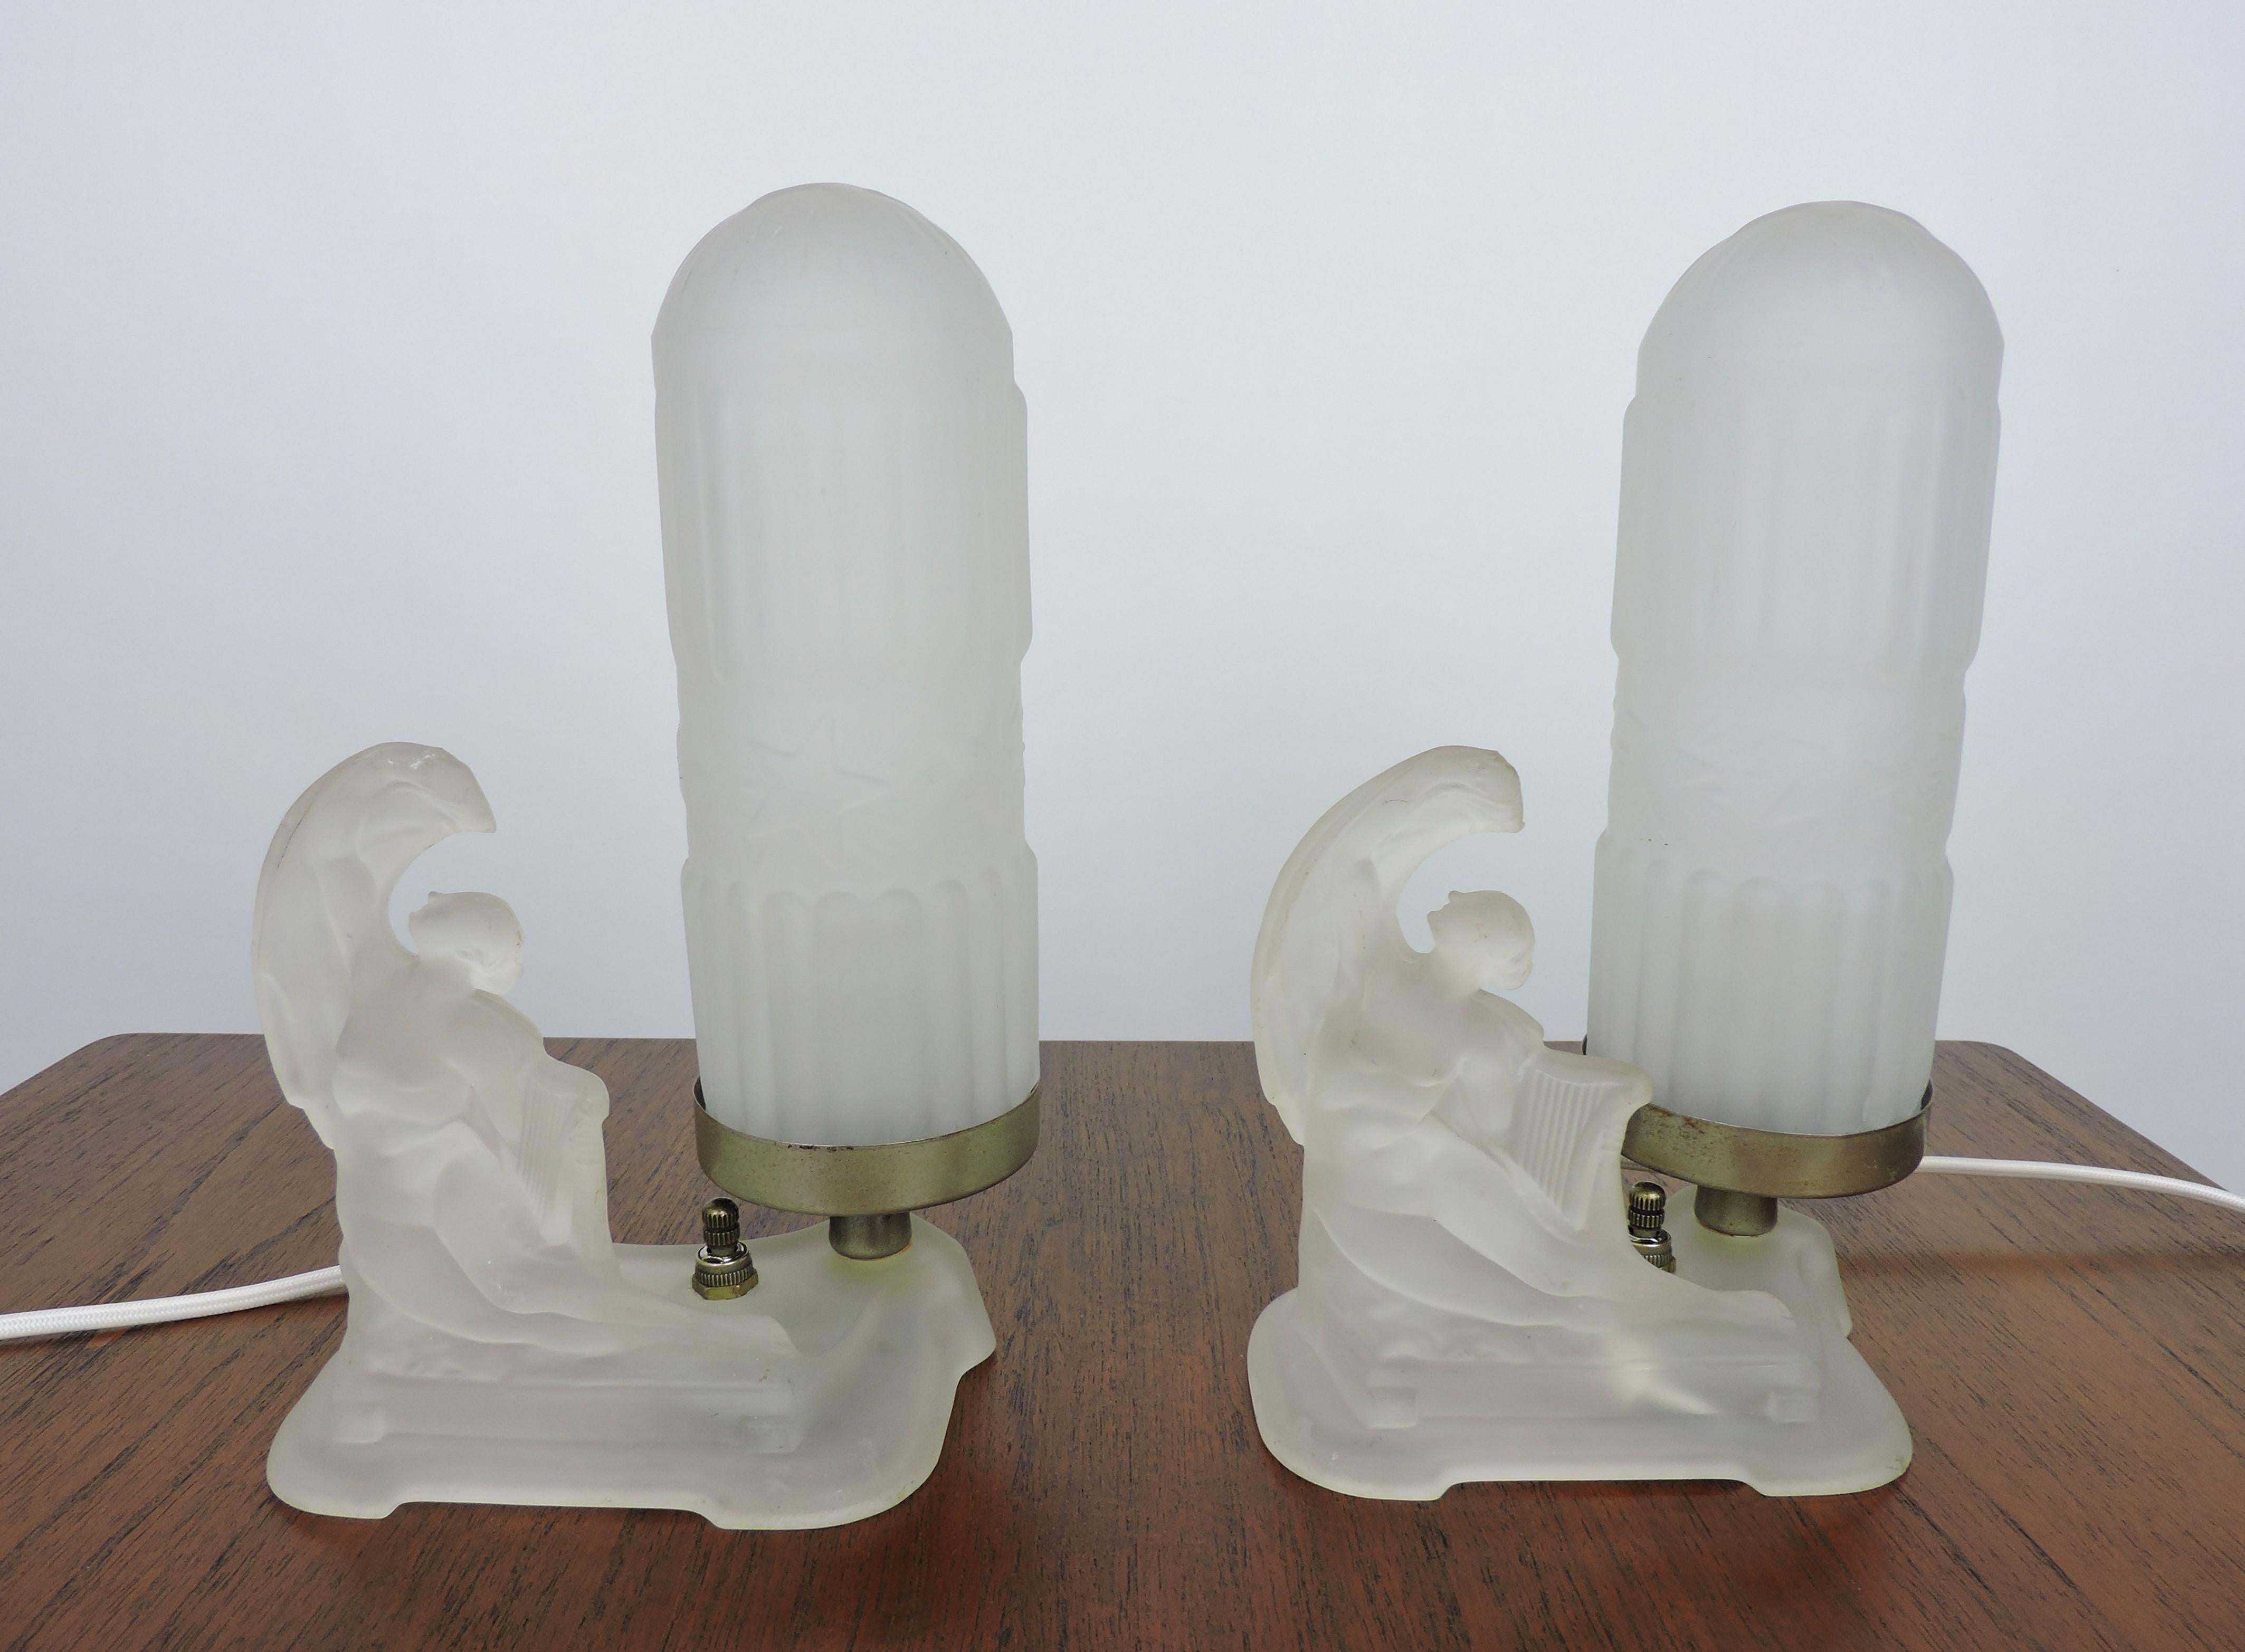 Wunderschönes Paar Boudoir-Tischlampen im Art-Deco-Stil mit Aktfiguren aus Milchglas, die Leiern halten, zugeschrieben der McKee Glass Company aus Pittsburgh. Diese haben alle eine neue Verkabelung mit stoffbezogenen Corden. Die matten Kugelschirme